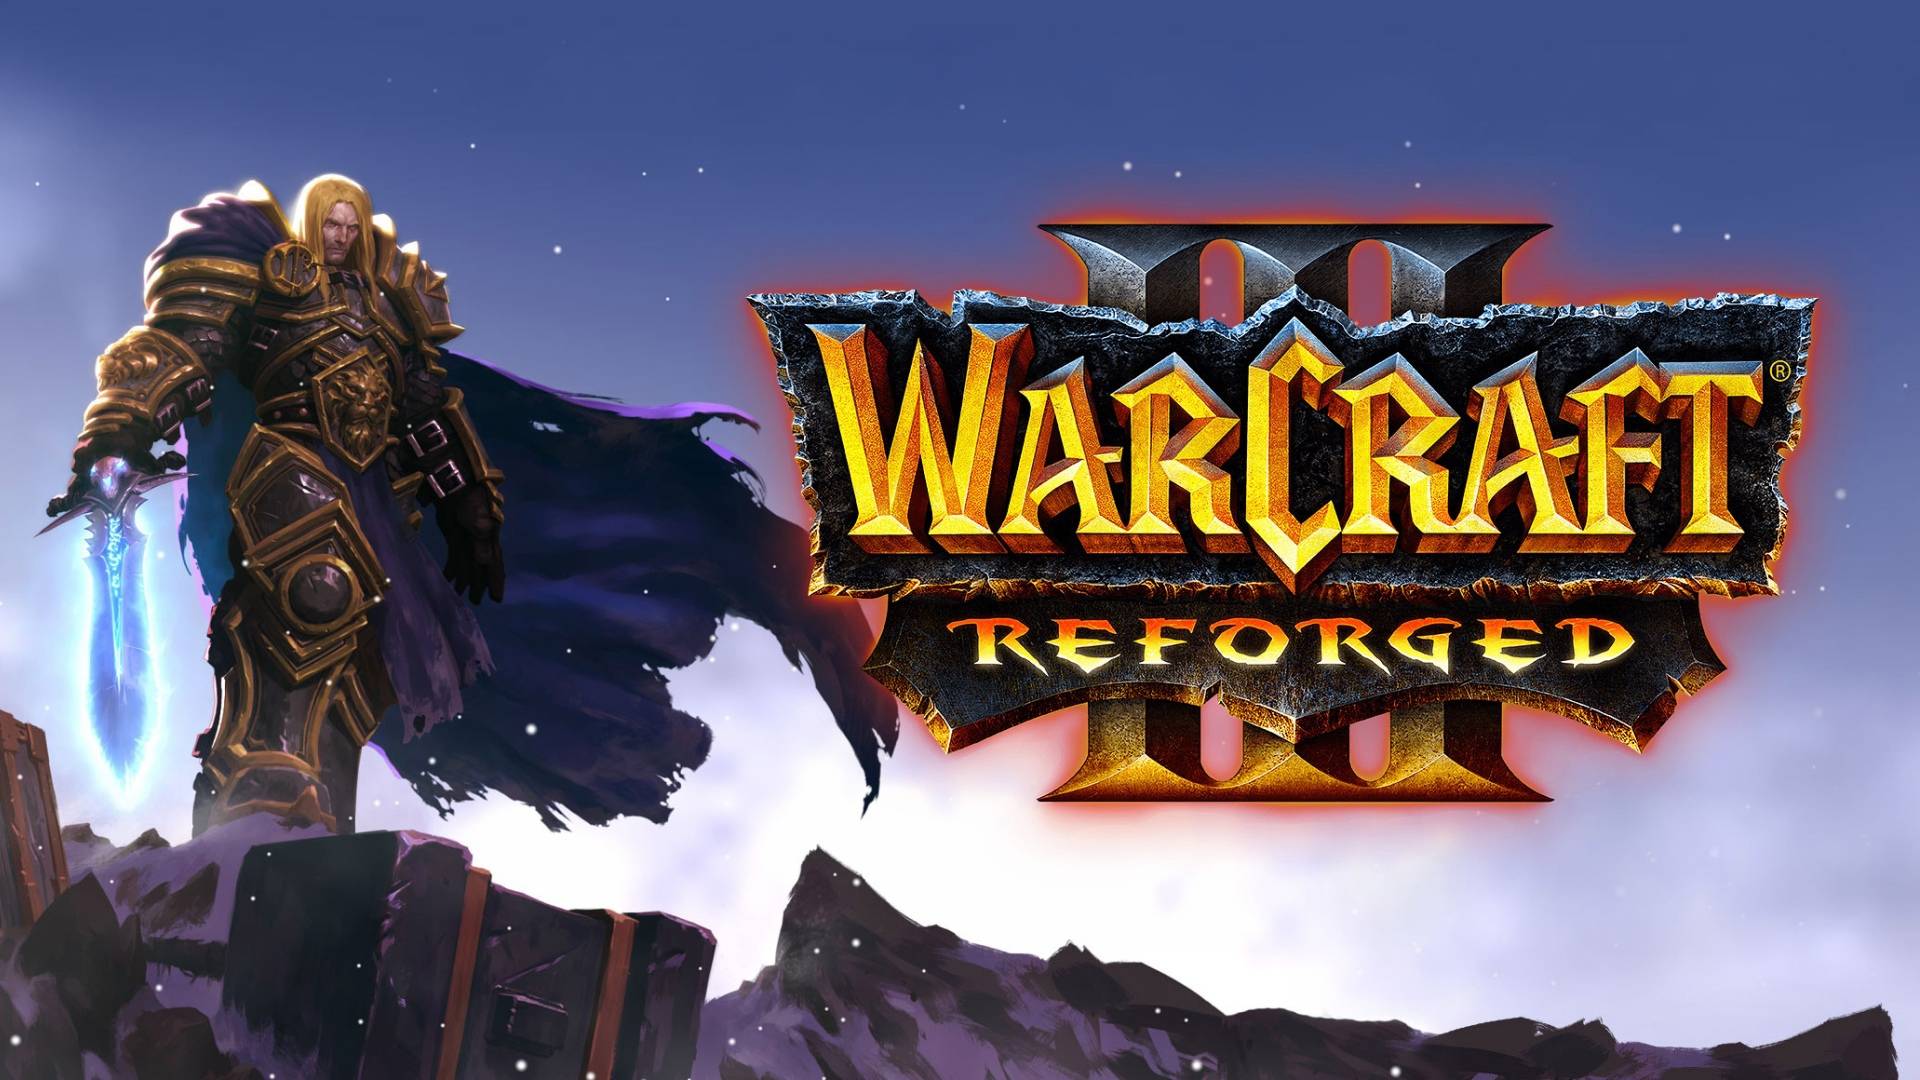 VK Play Cup #70 + Warcraft 3 Reforged - W3Сhampions Battle.net Ladder - MisterWinner